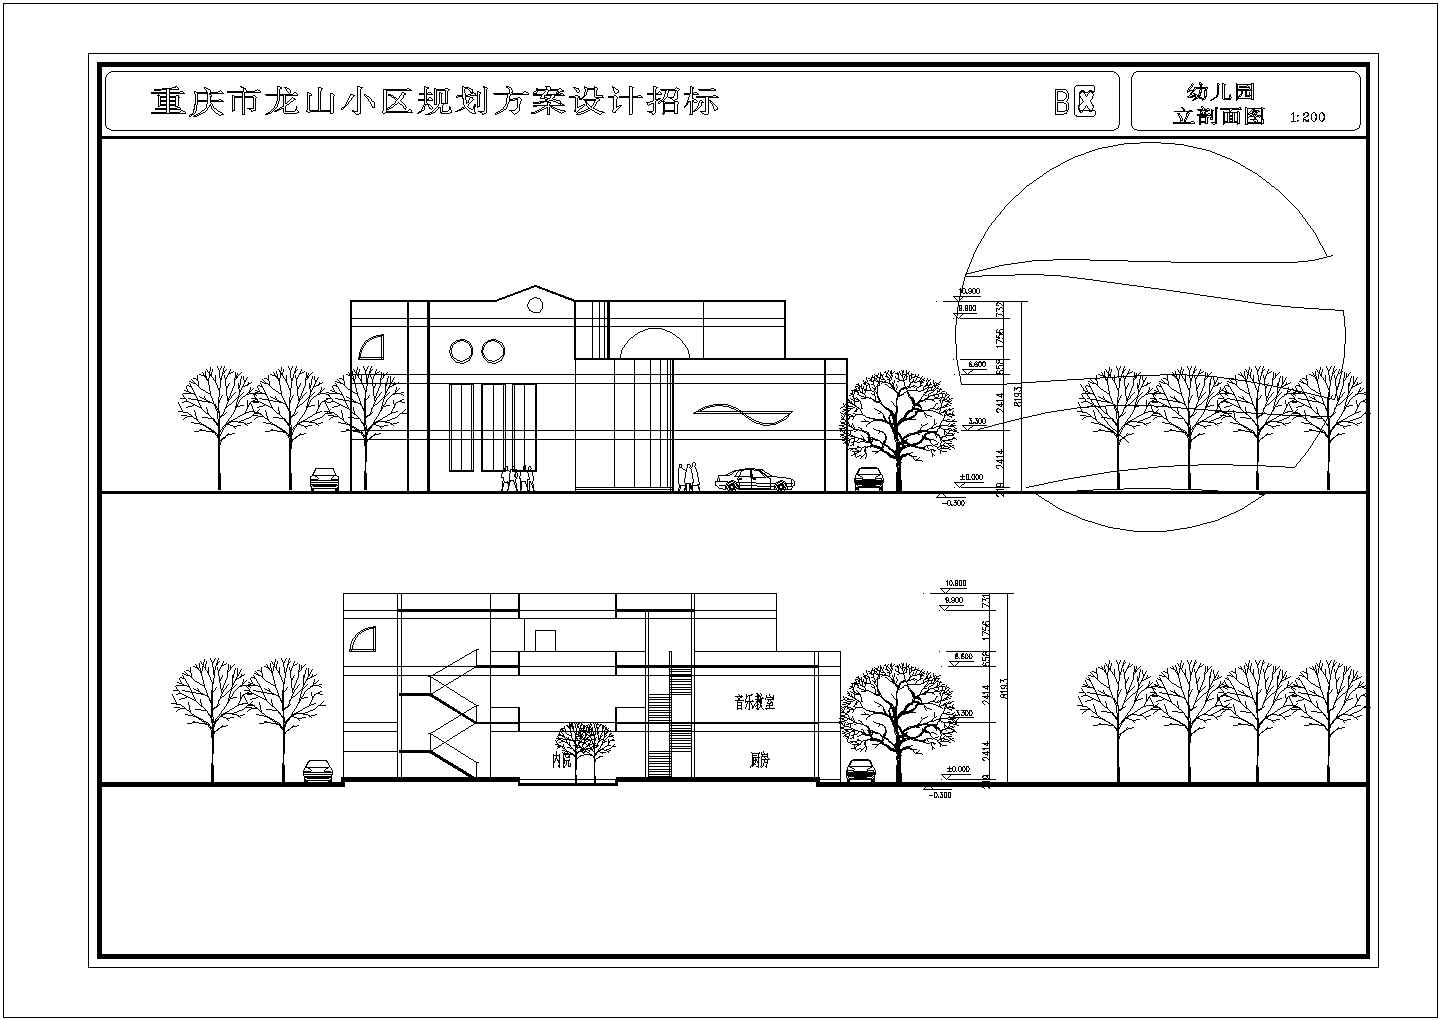 【重庆市】龙山小区幼儿园建筑设计图